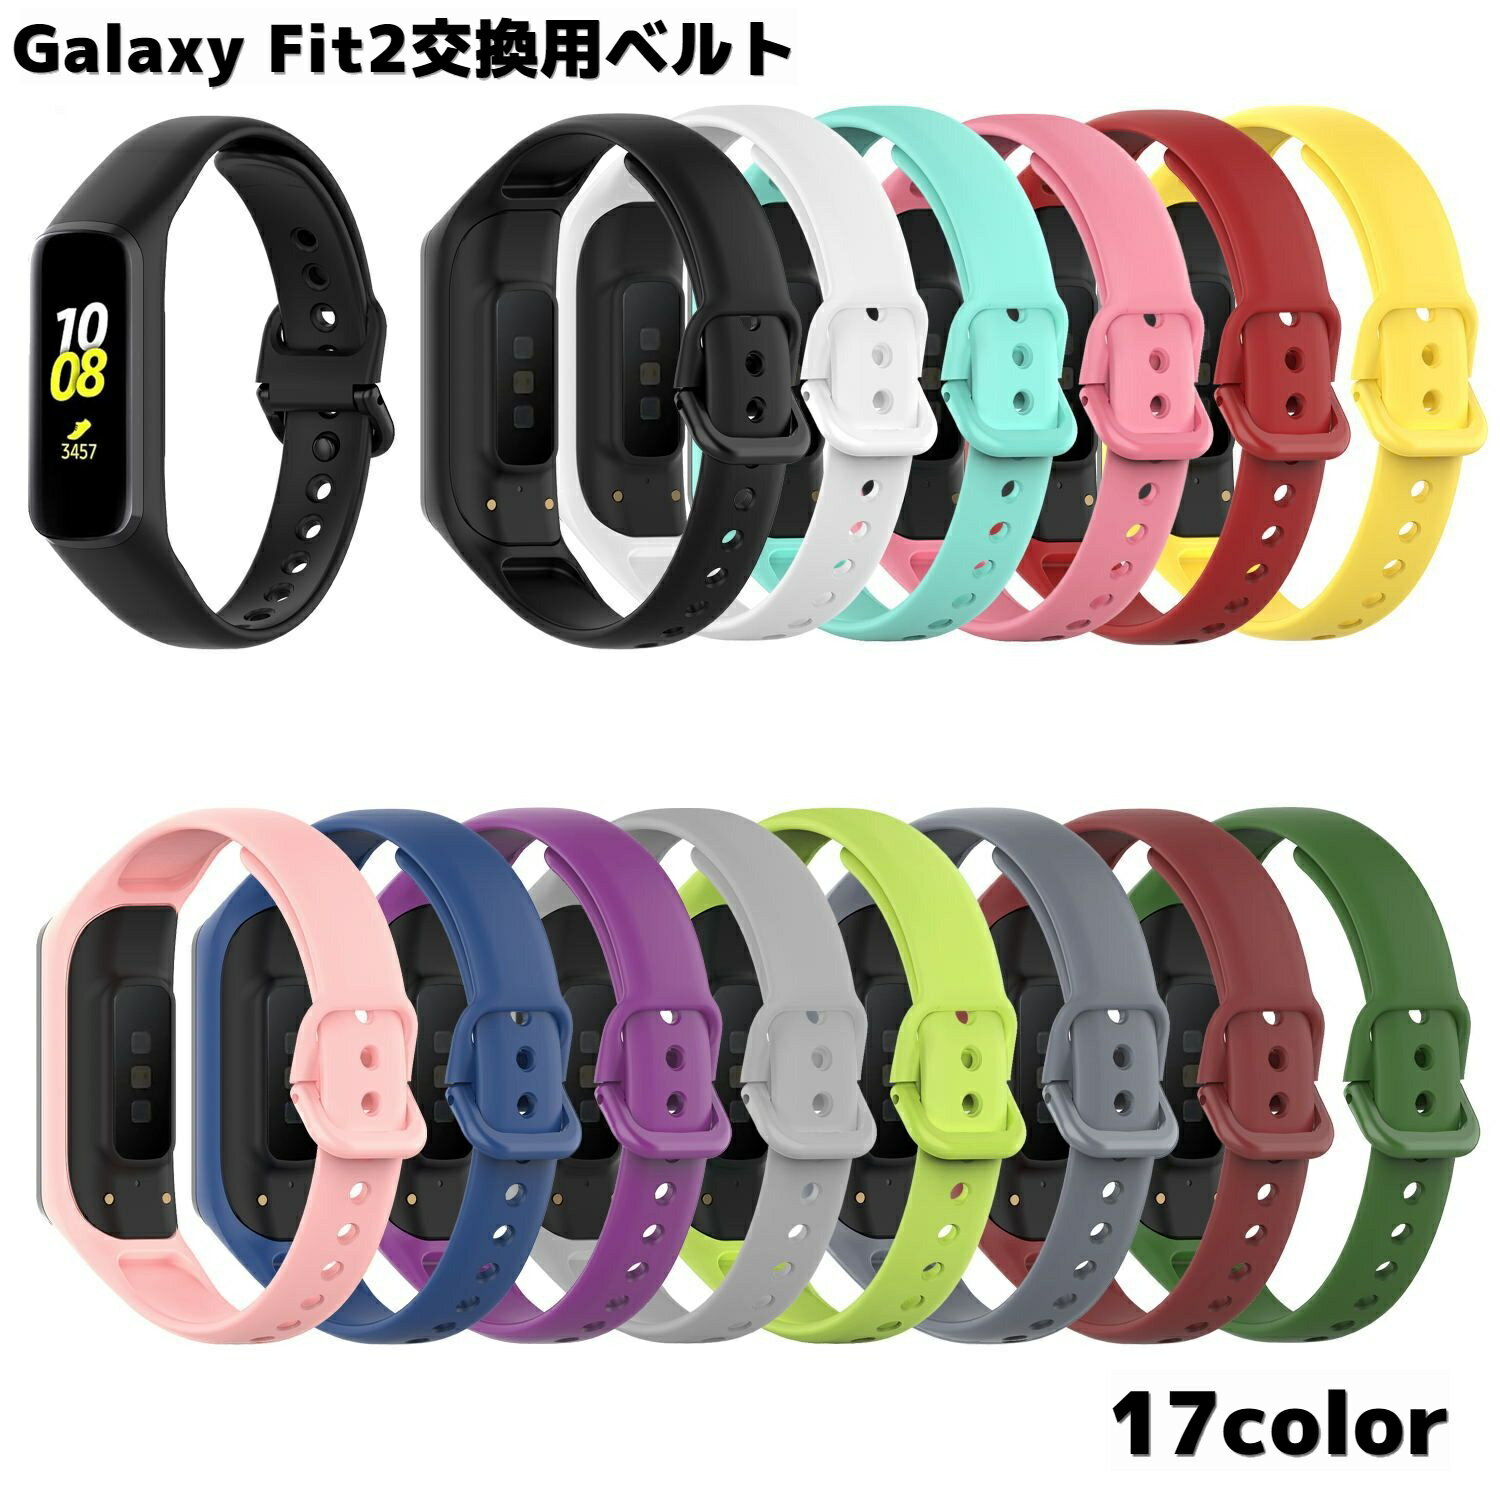 送料無料 Galaxy Fit2交換用ベルト Samsung スマートウォッチ 腕時計用ベルト バンド R220 シンプル 無地 スポーティー おしゃれ サムスン ギャラクシー フィット2 替えベルト メンズ レディース